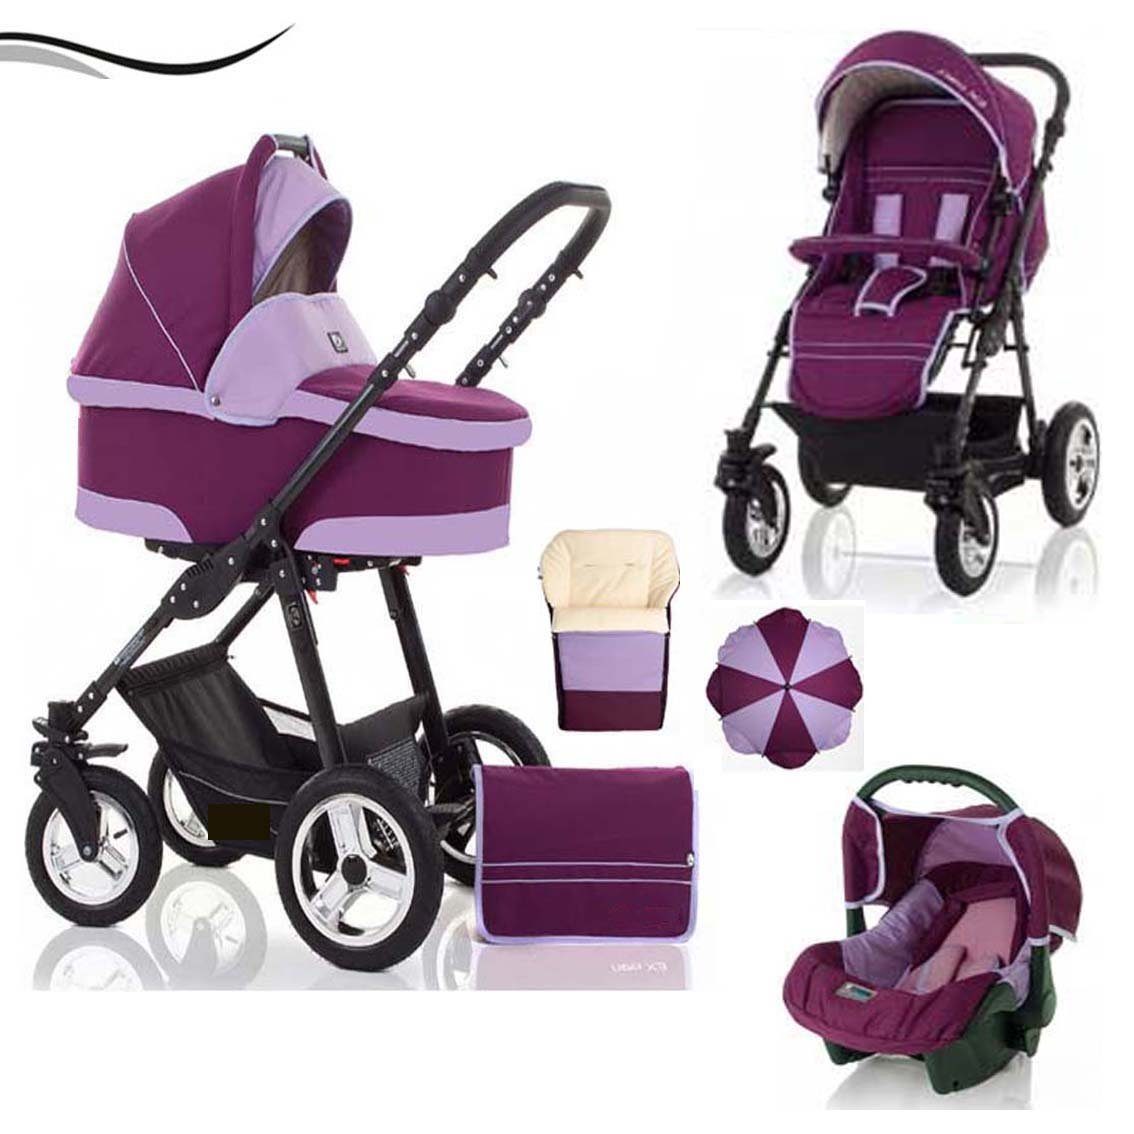 babies-on-wheels Kombi-Kinderwagen City Star 5 in 1 inkl. Autositz, Sonnenschirm und Fußsack - 18 Teile - von Geburt bis 4 Jahre in 16 Farben Bordeaux-Flieder